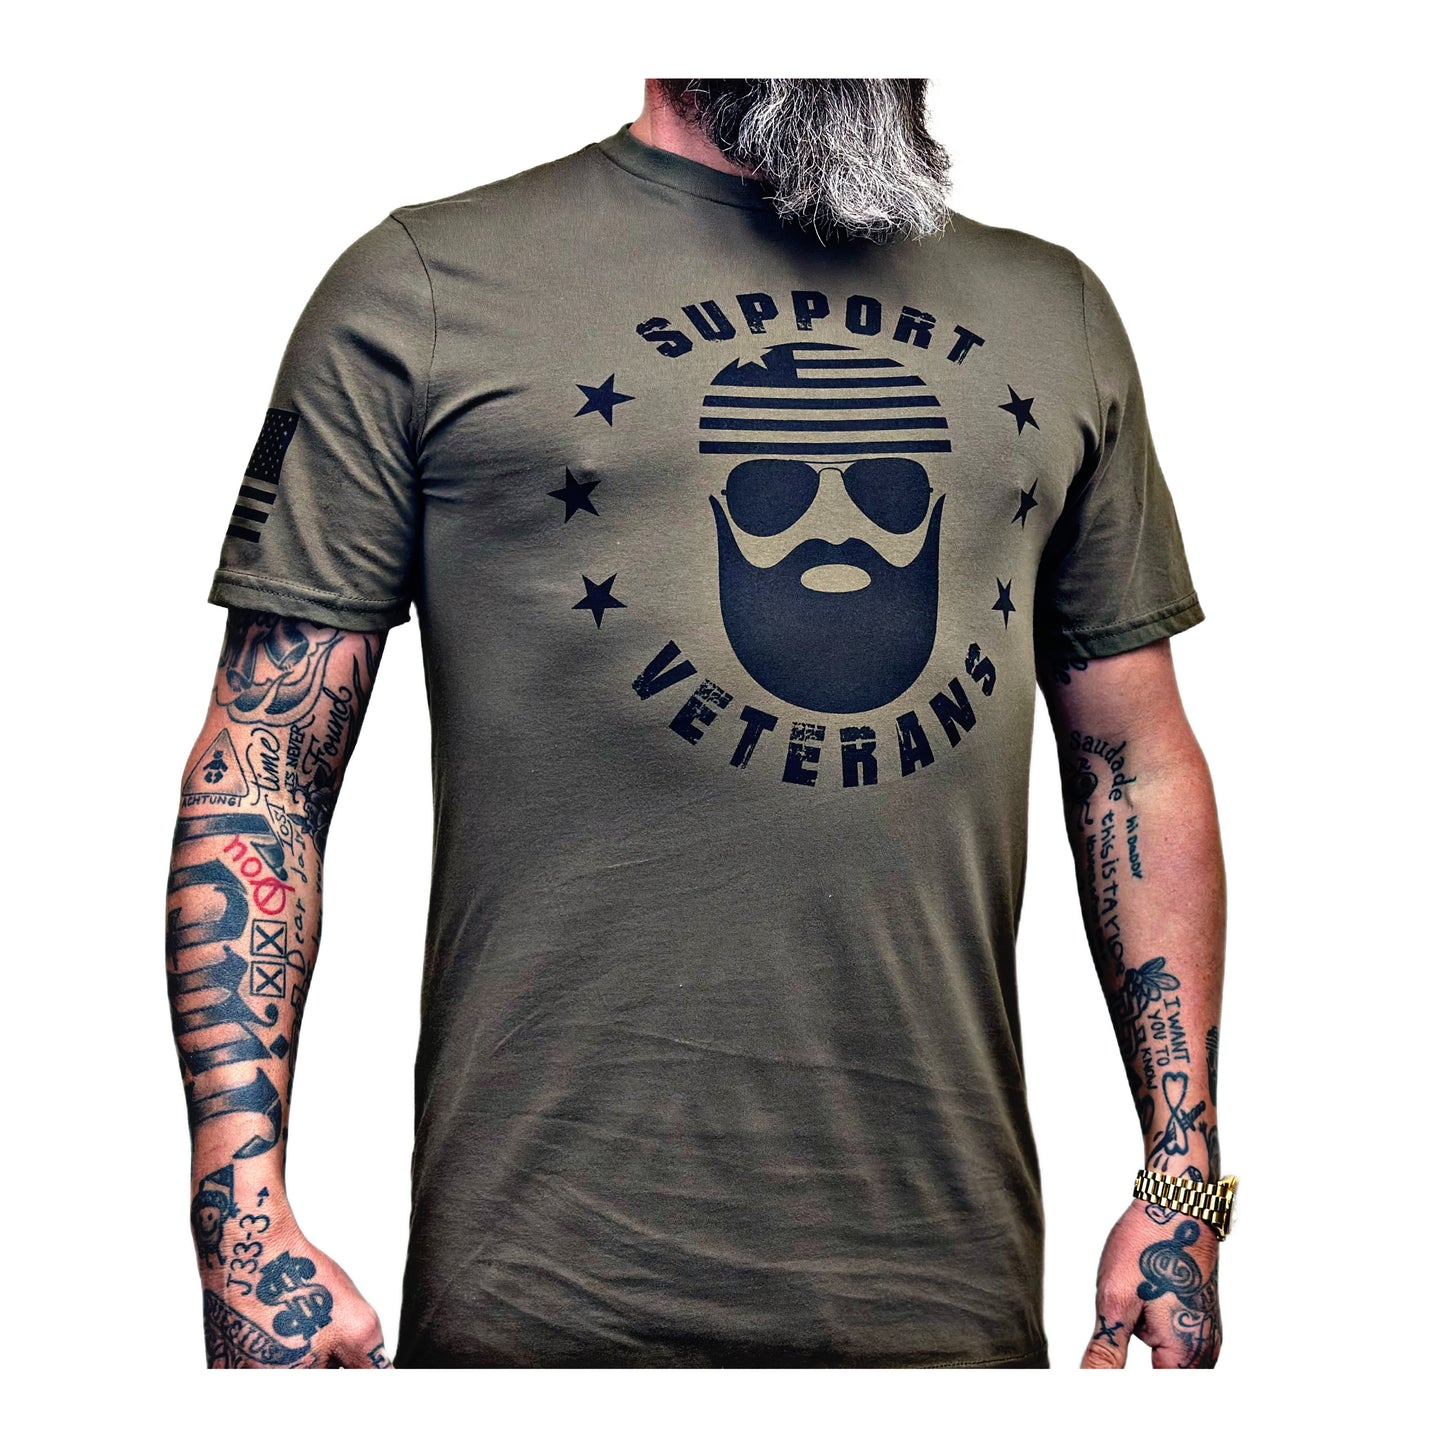 Support Veterans Shirt